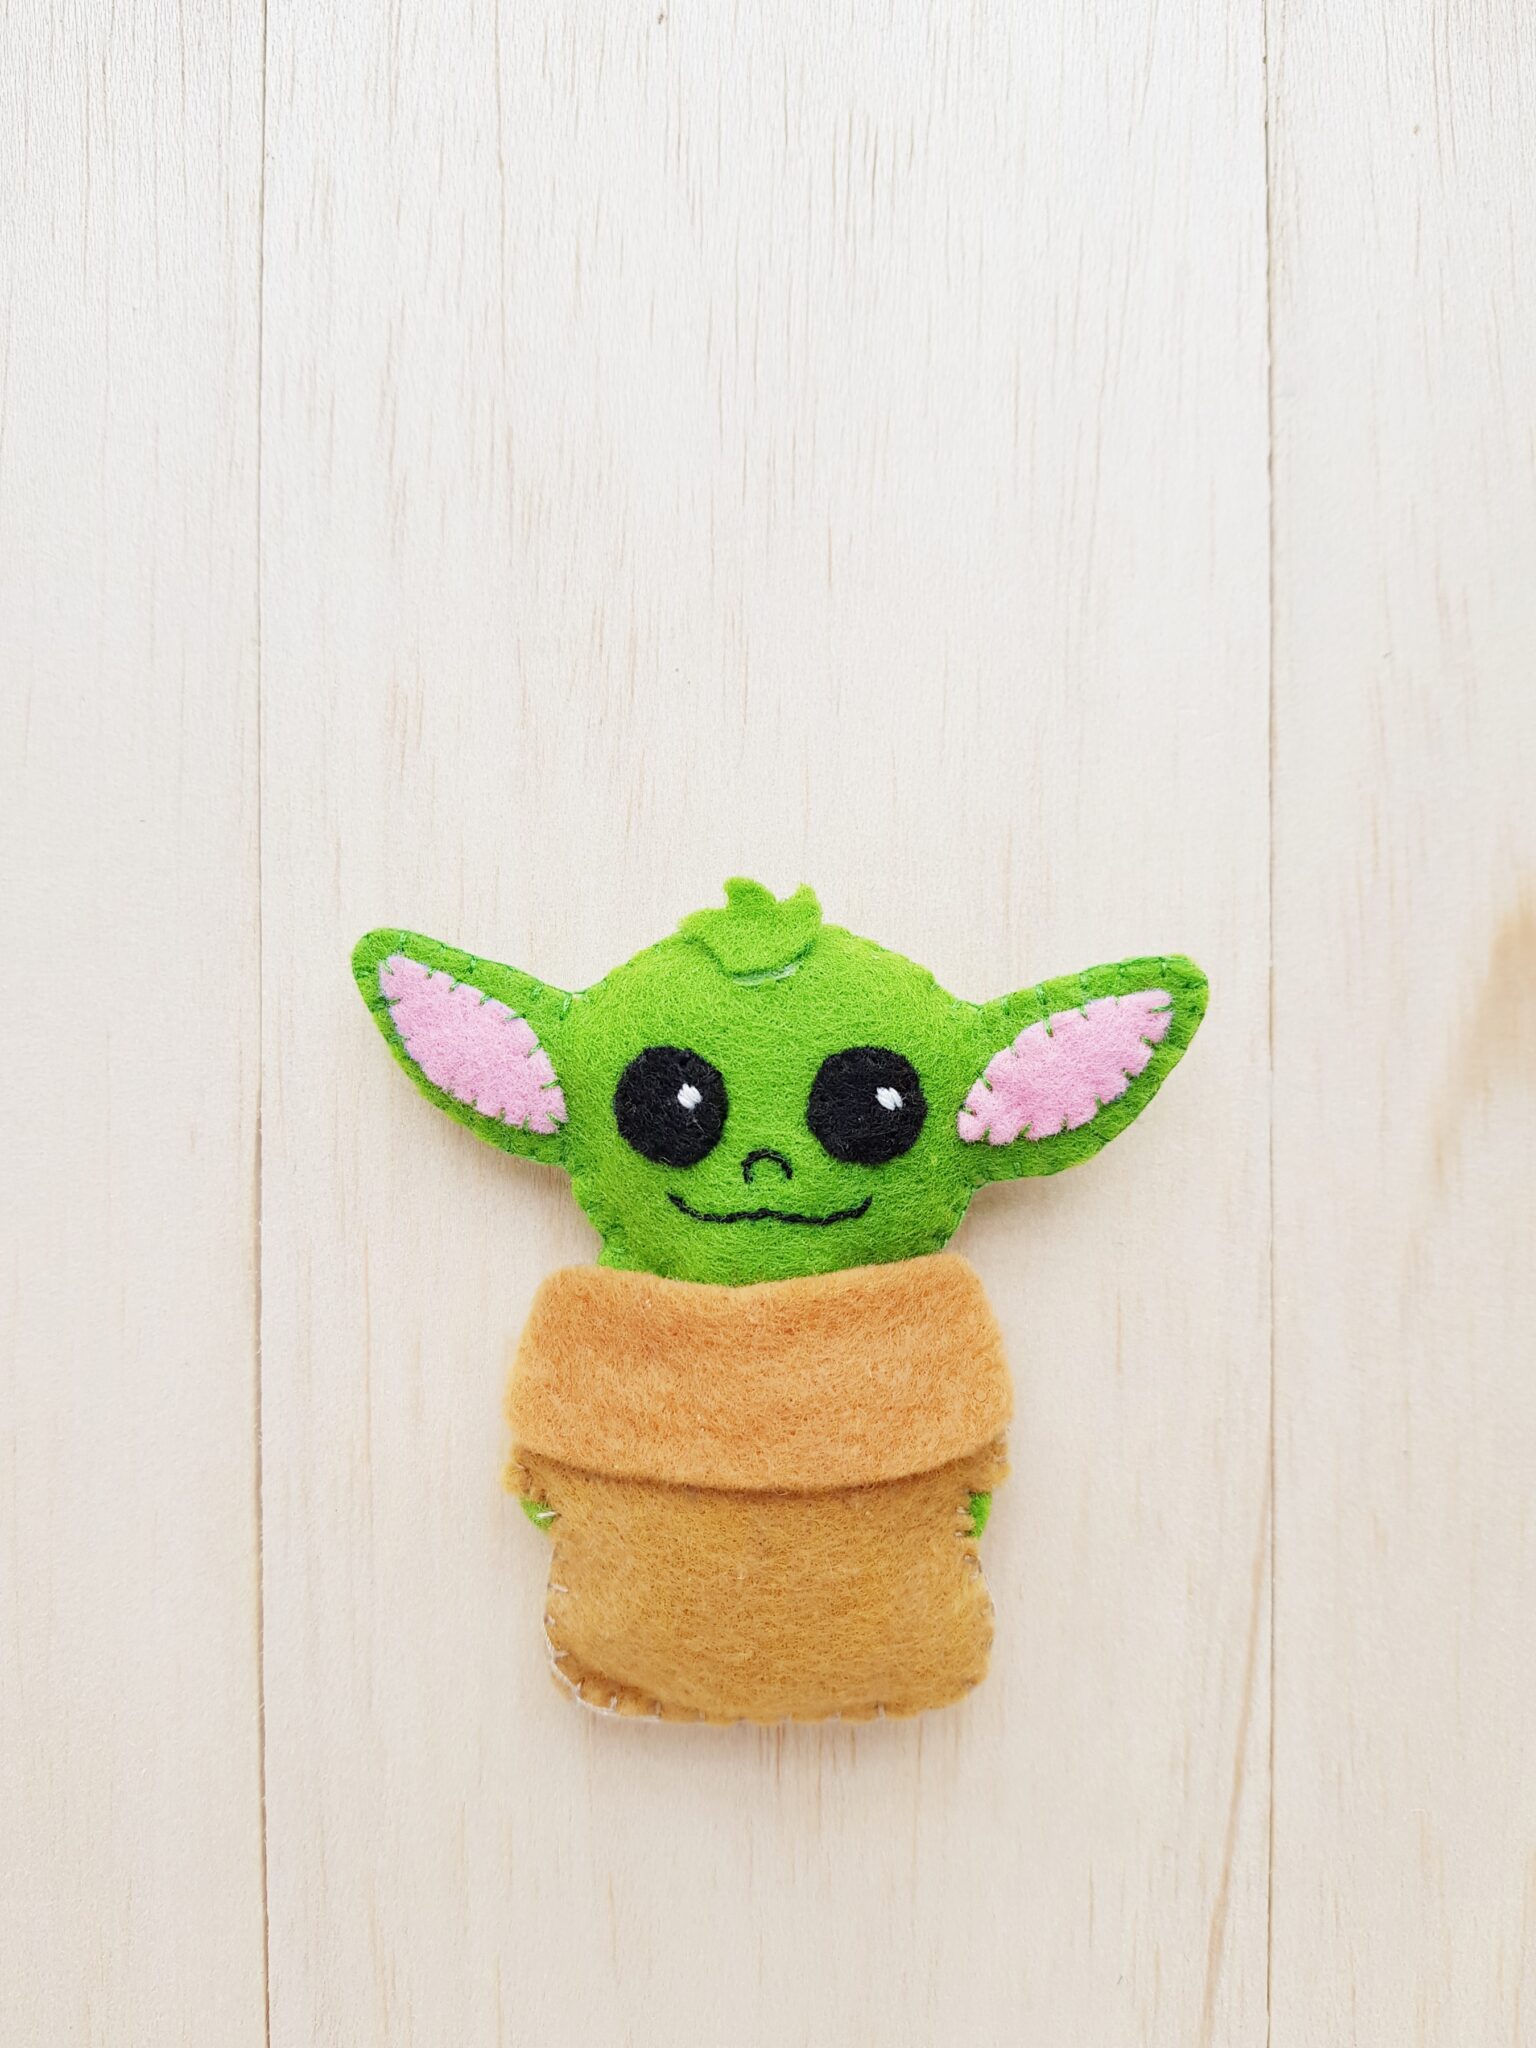 DIY Baby Yoda Plushie Tutorial